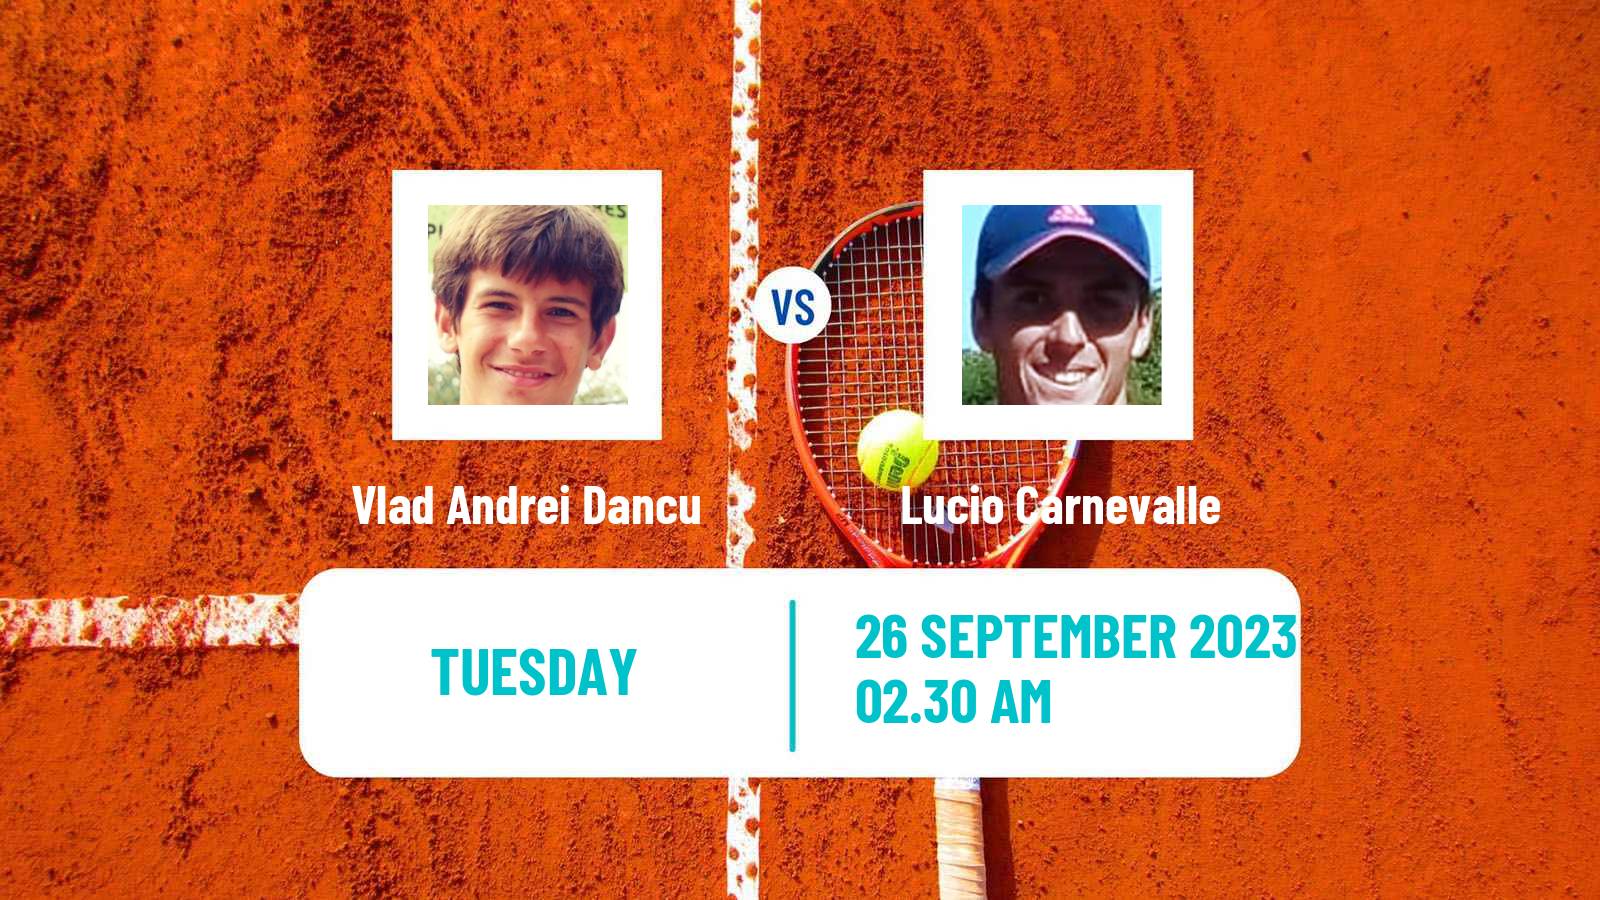 Tennis ITF M15 Arad Men Vlad Andrei Dancu - Lucio Carnevalle